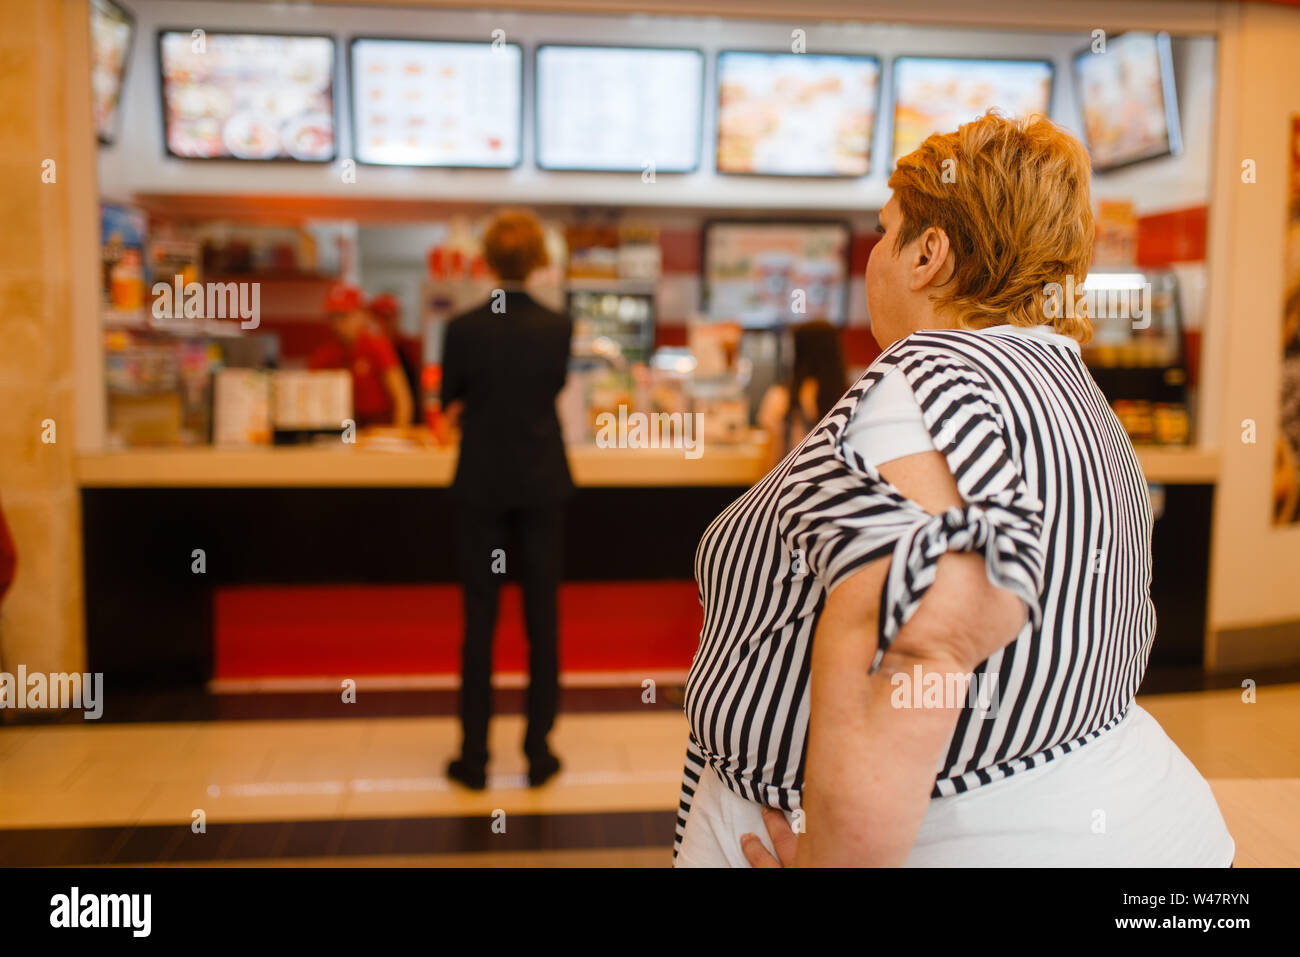 Grosse femme au fast food restaurant menu. L'excès de personne de sexe féminin l'achat, la restauration rapide problème d'obésité Banque D'Images